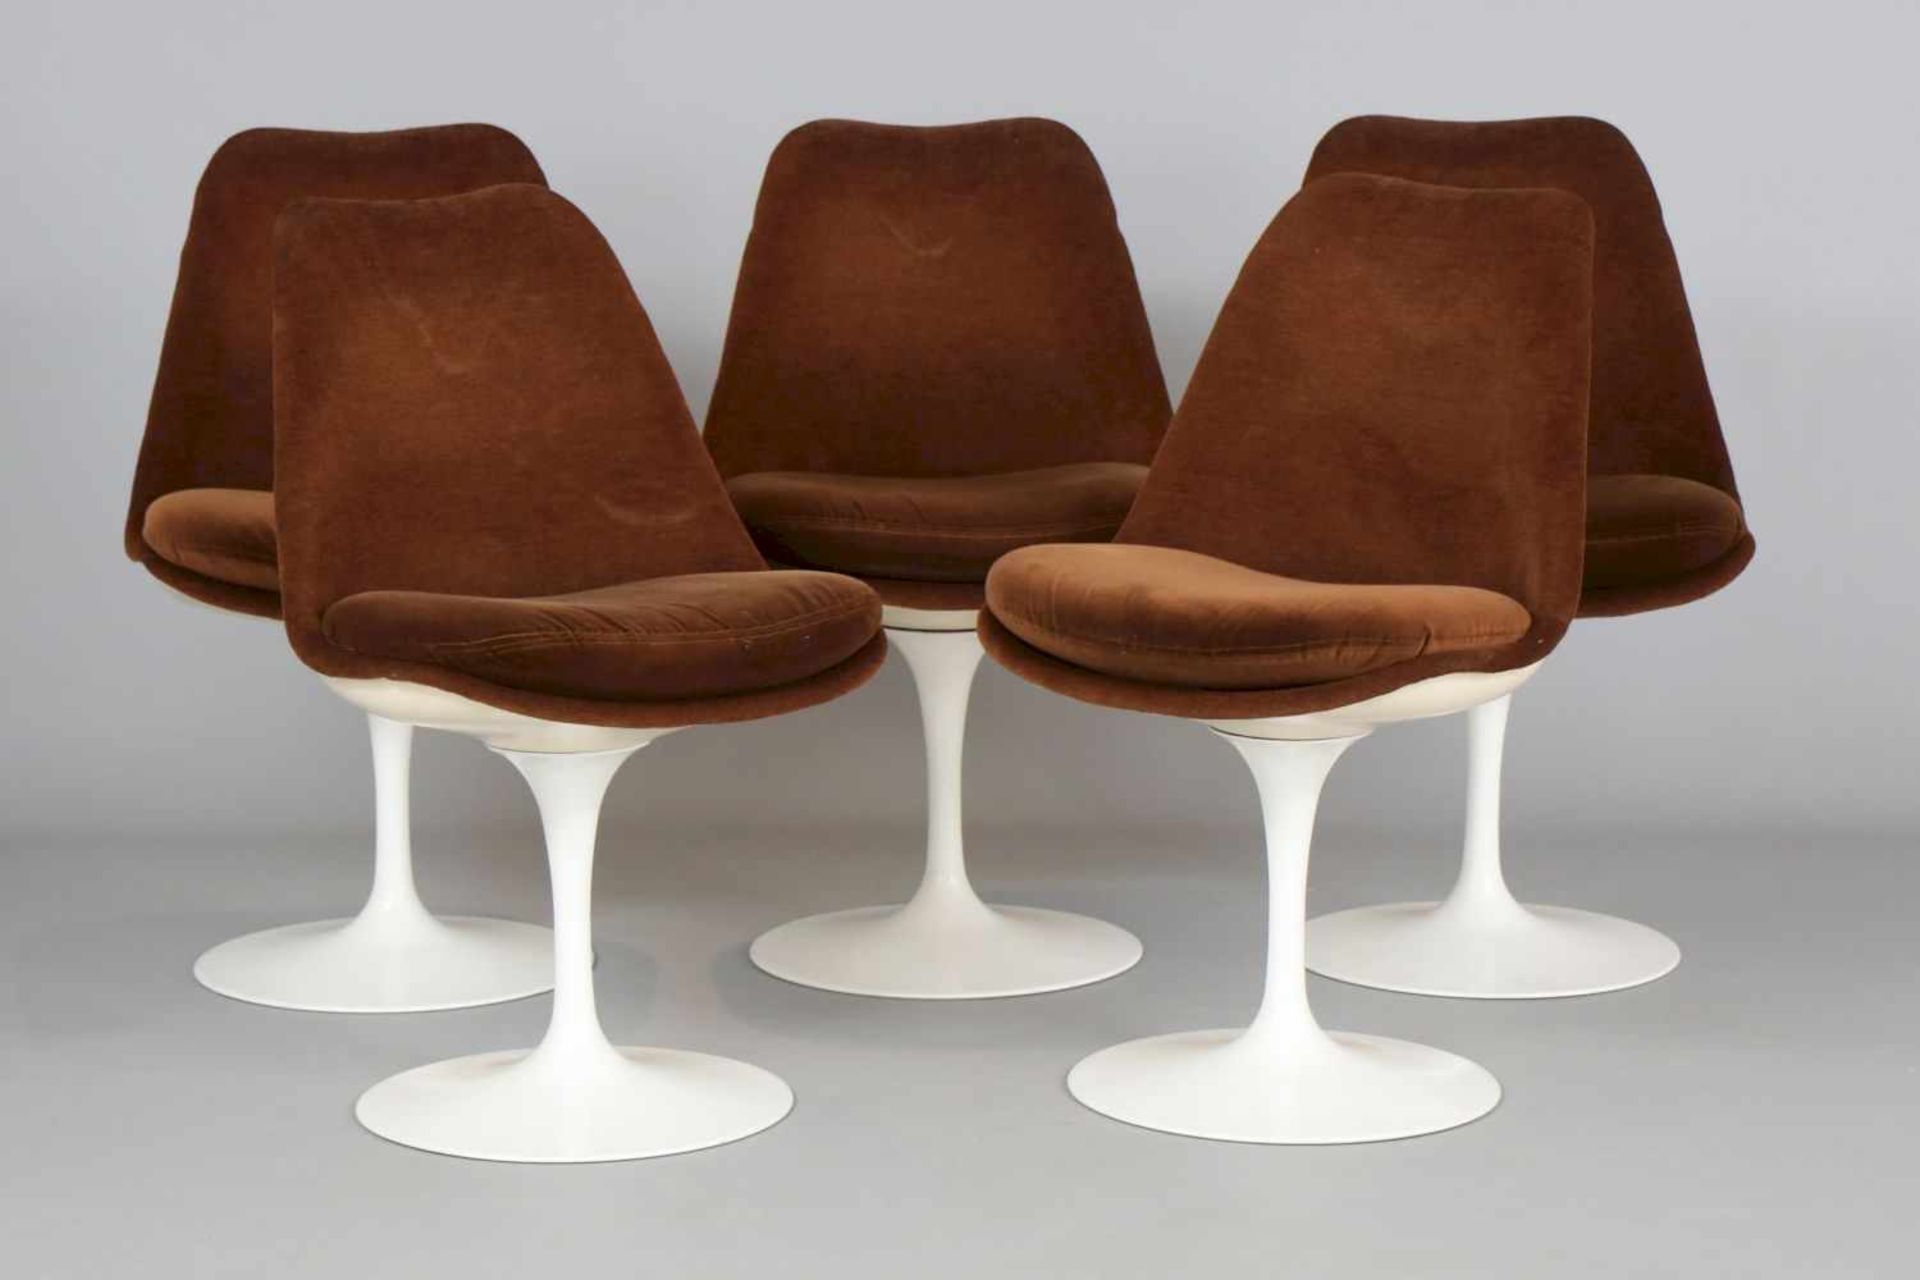 5 EERO SAARINEN Tulip Chairs Hersteller KNOLL, um 1970, weiße Kunststoff-Sitzschale mit braunem